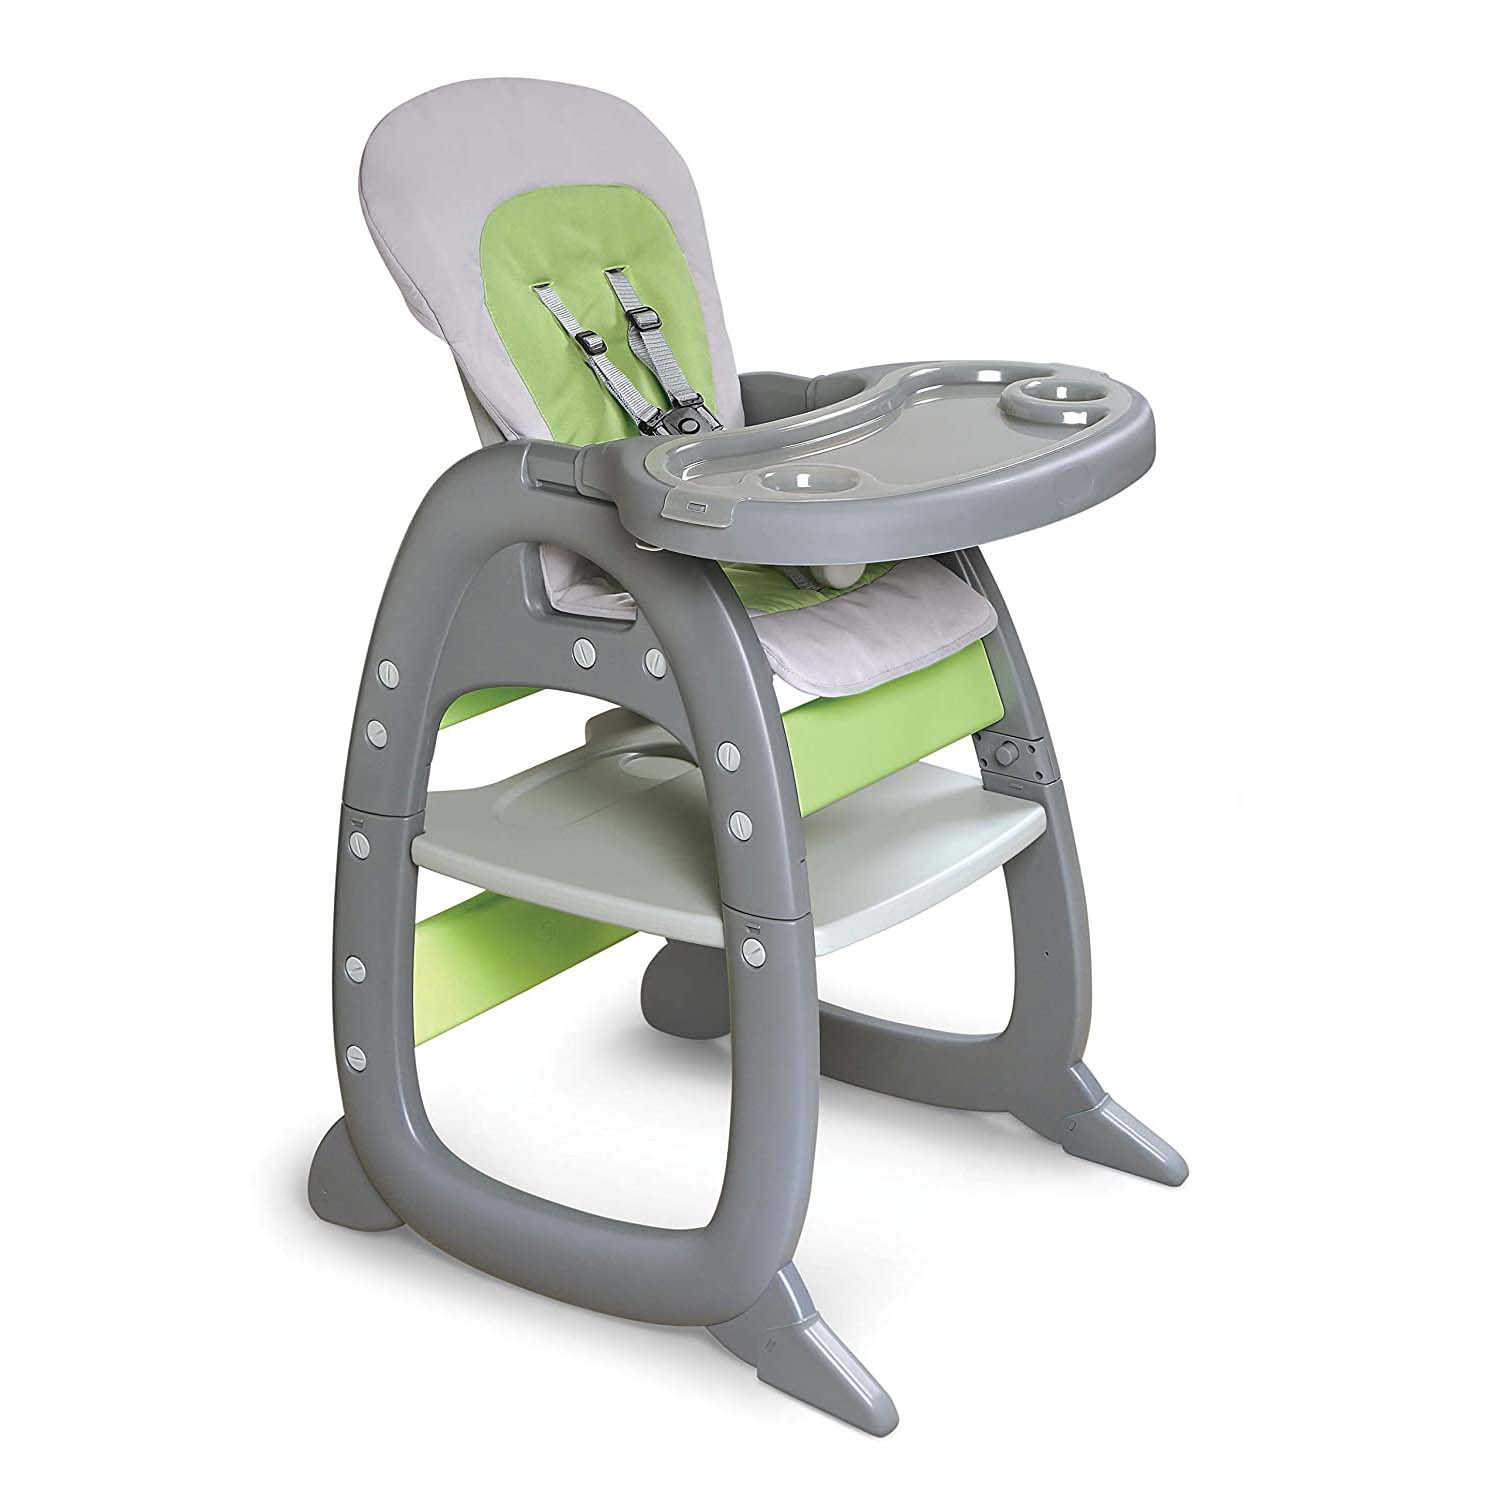 Детский стульчик-трансформер Badger Basket Envee II, серый/зеленый детский стульчик трансформер badger basket envee ii серый